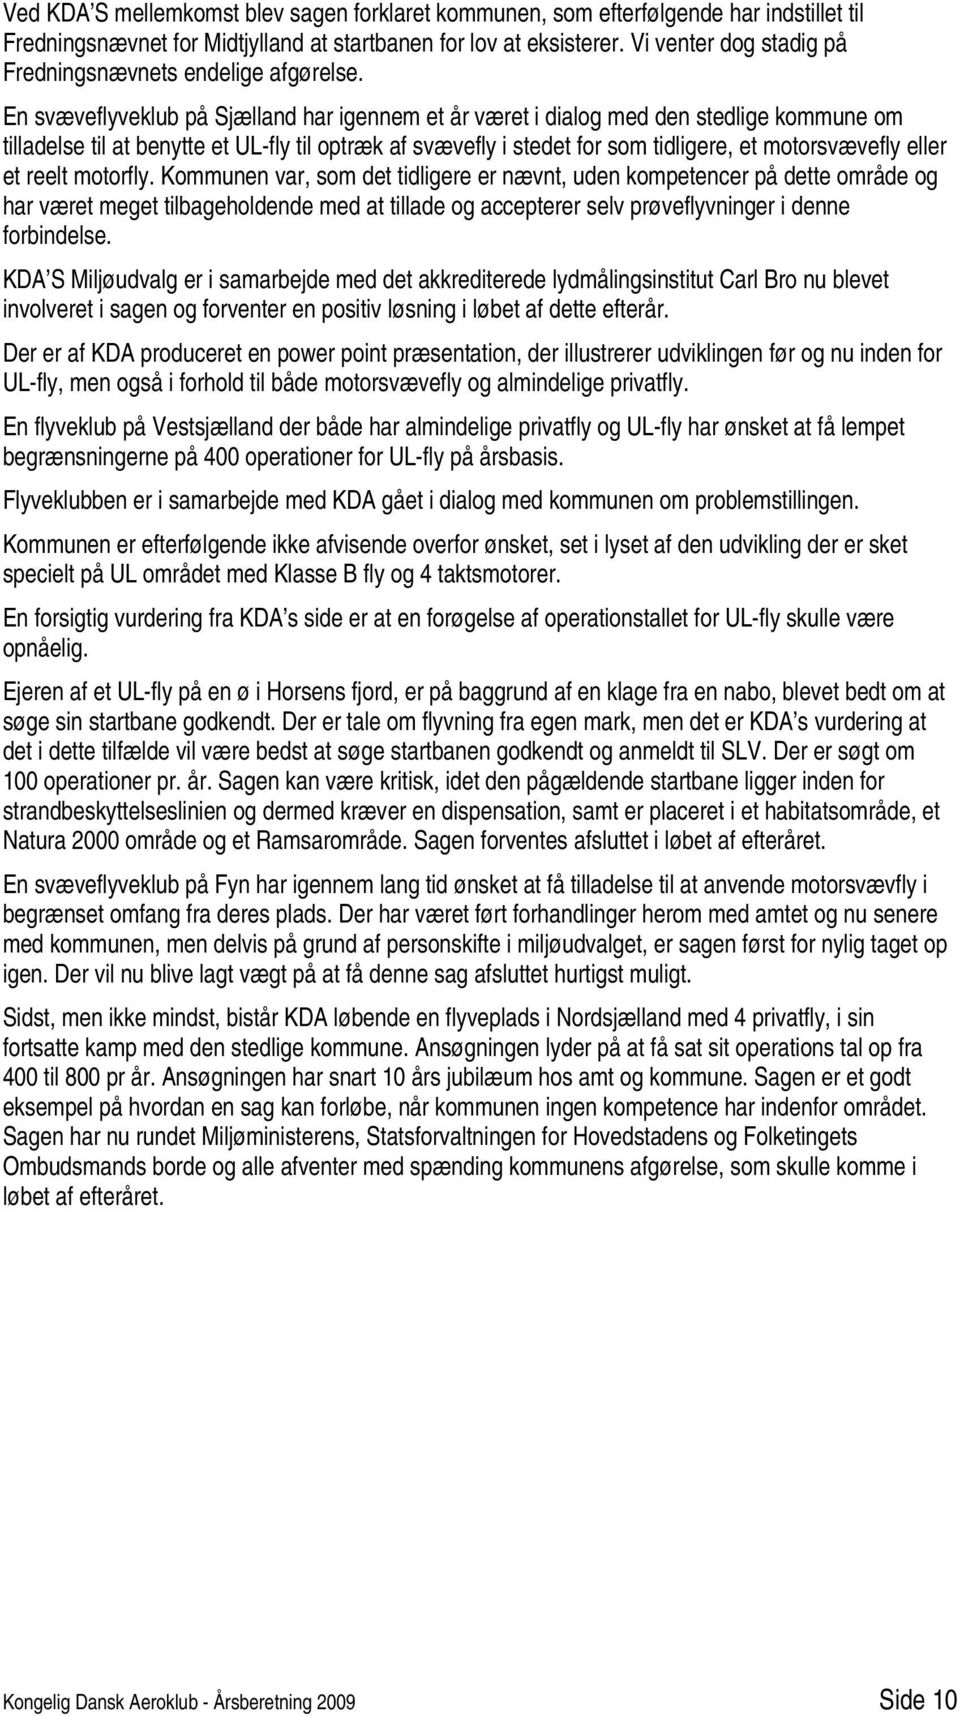 En svæveflyveklub på Sjælland har igennem et år været i dialog med den stedlige kommune om tilladelse til at benytte et UL-fly til optræk af svævefly i stedet for som tidligere, et motorsvævefly